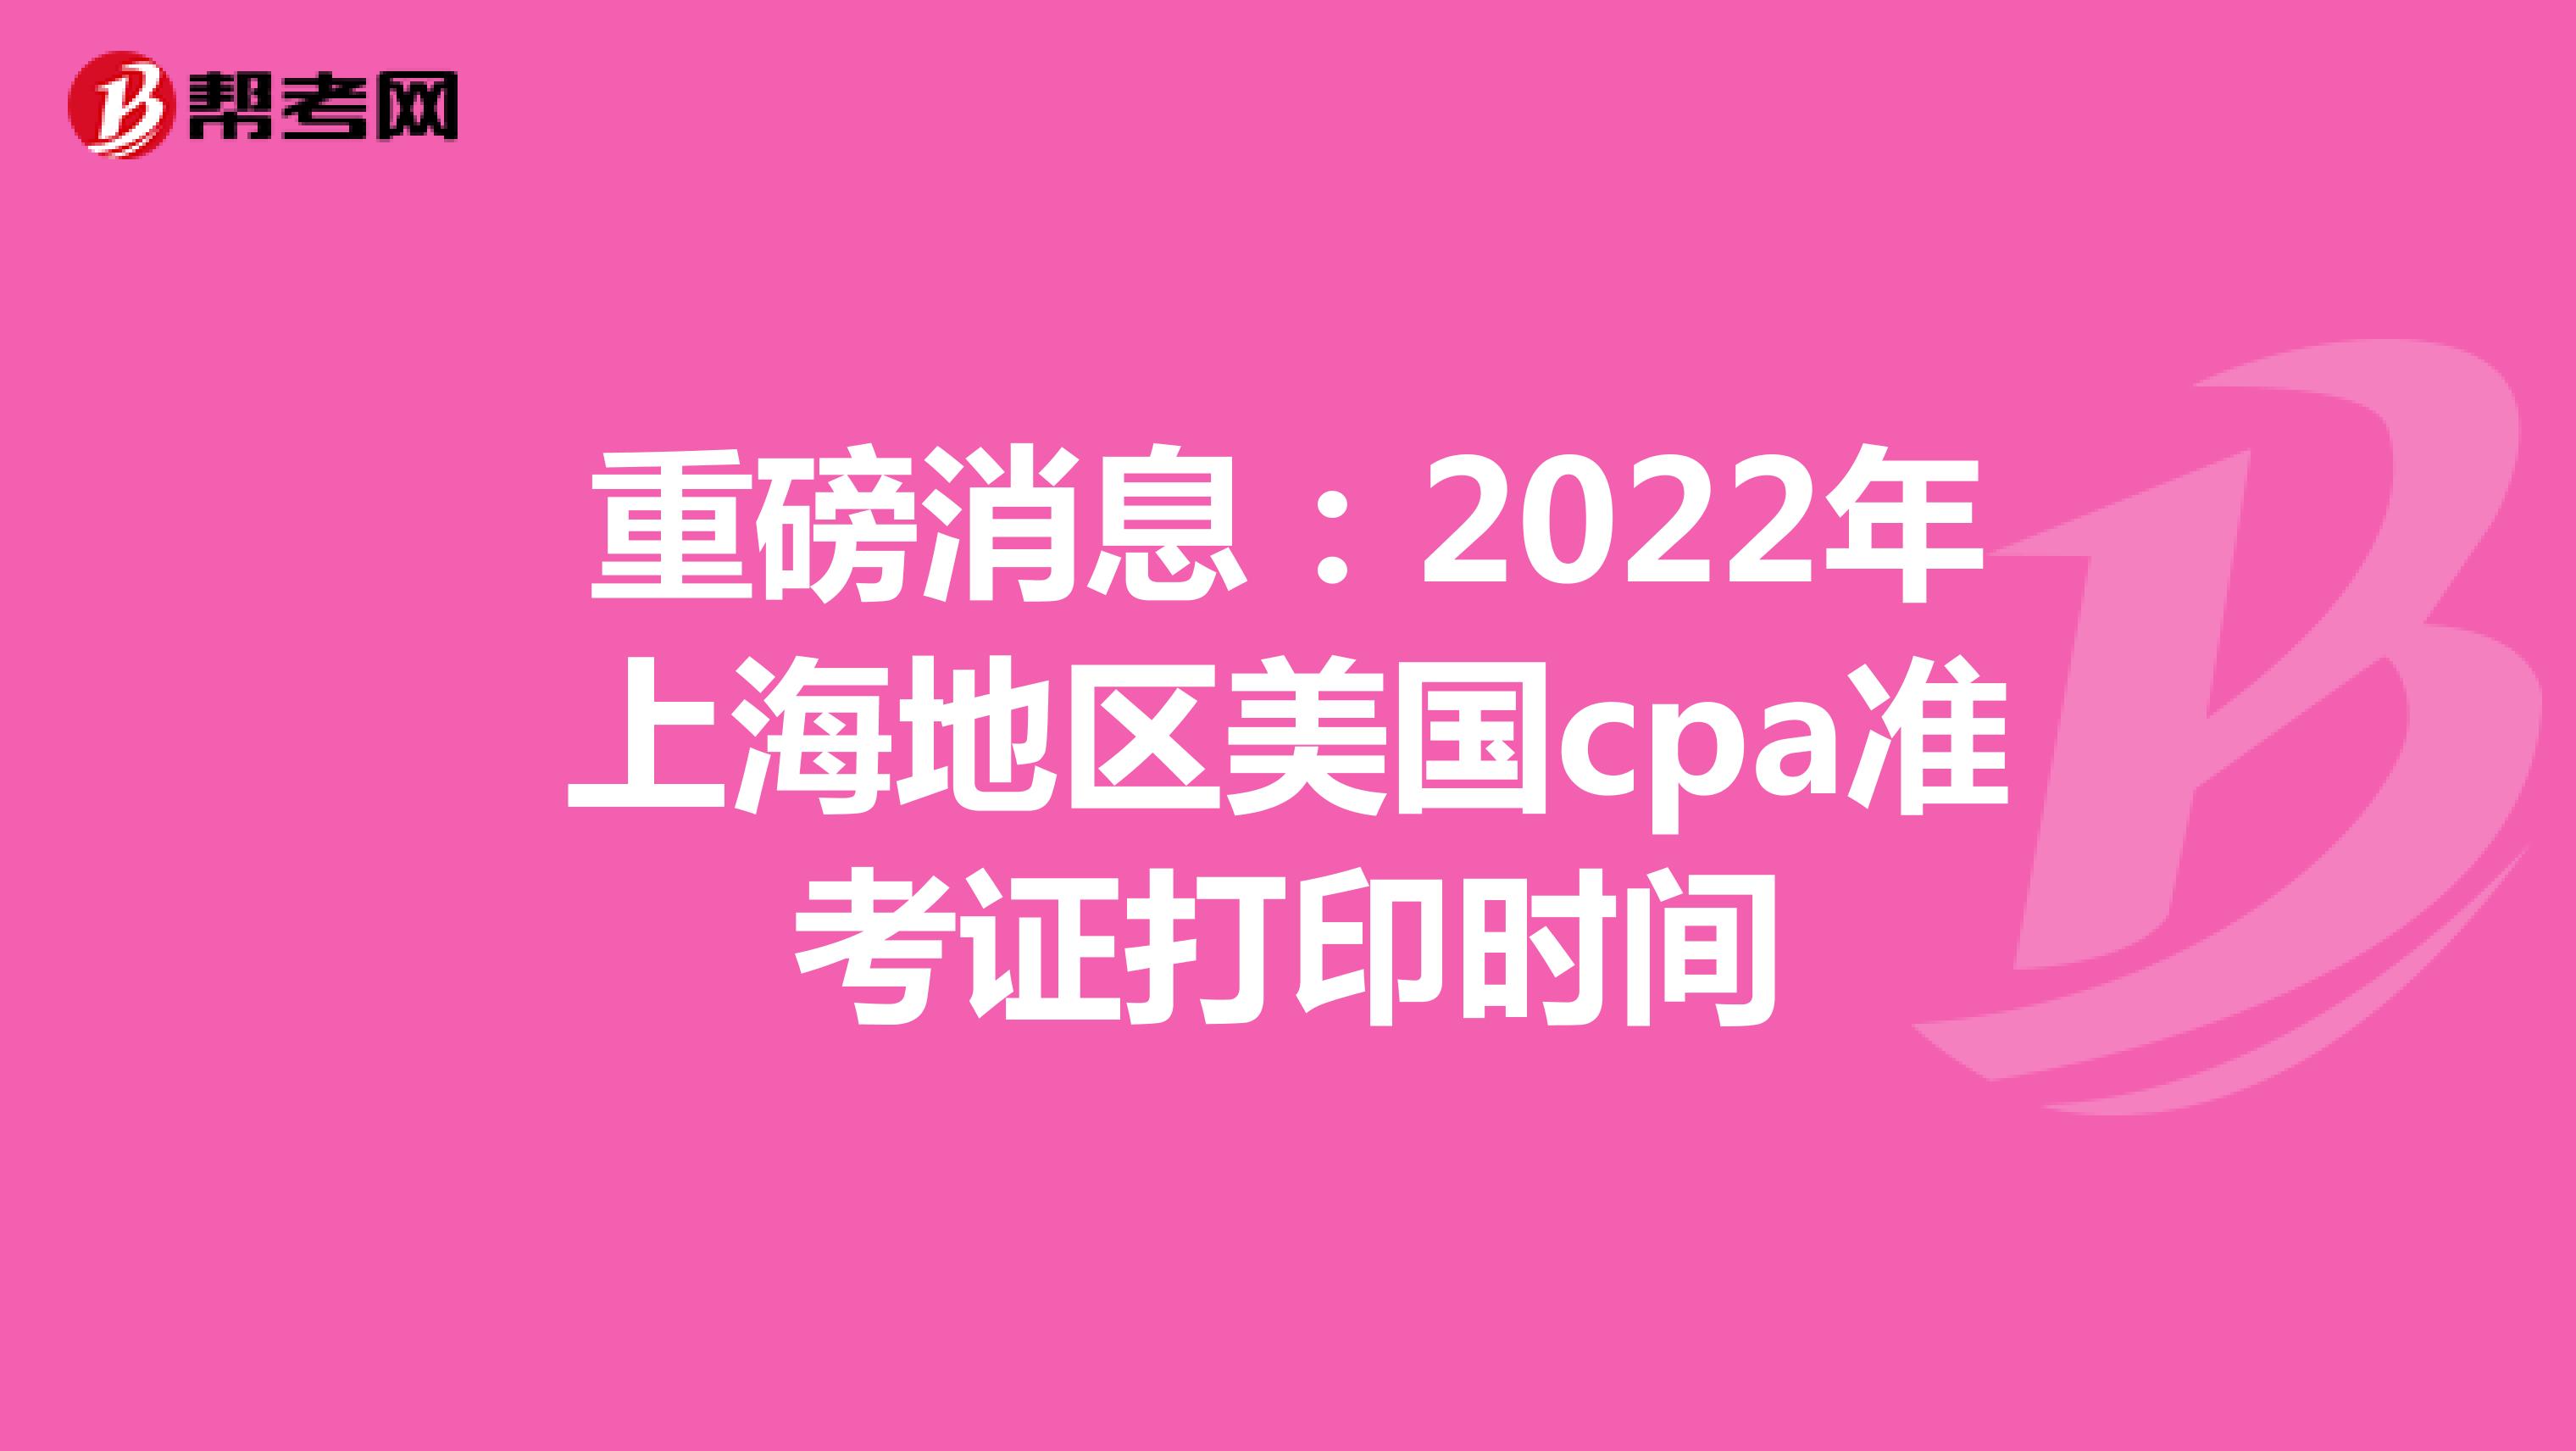 重磅消息：2022年上海地区美国cpa准考证打印时间